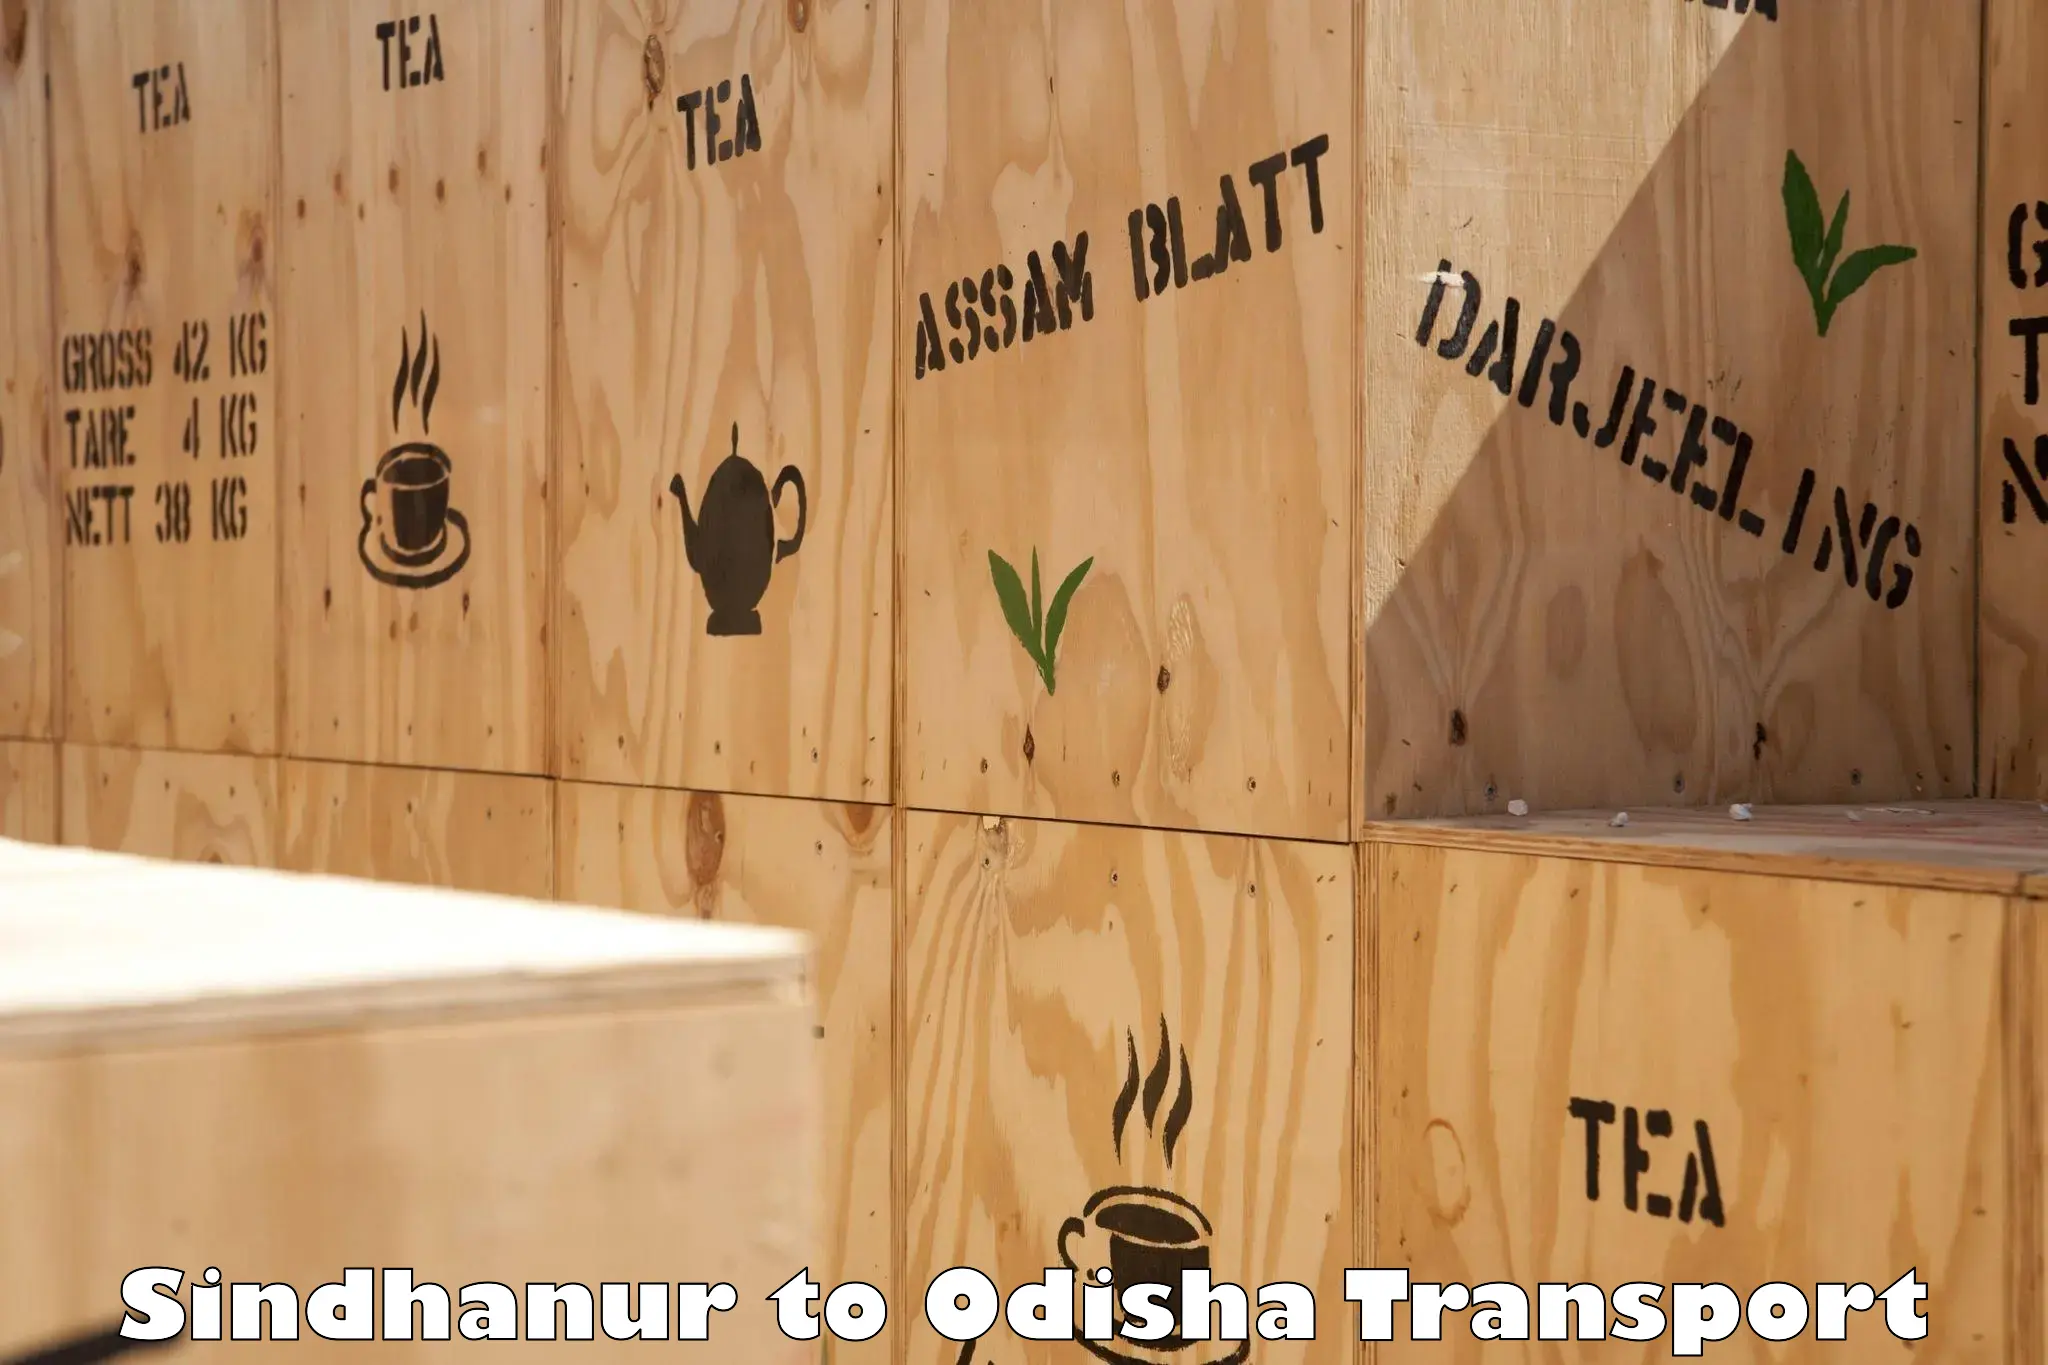 Container transport service Sindhanur to Bhadrak